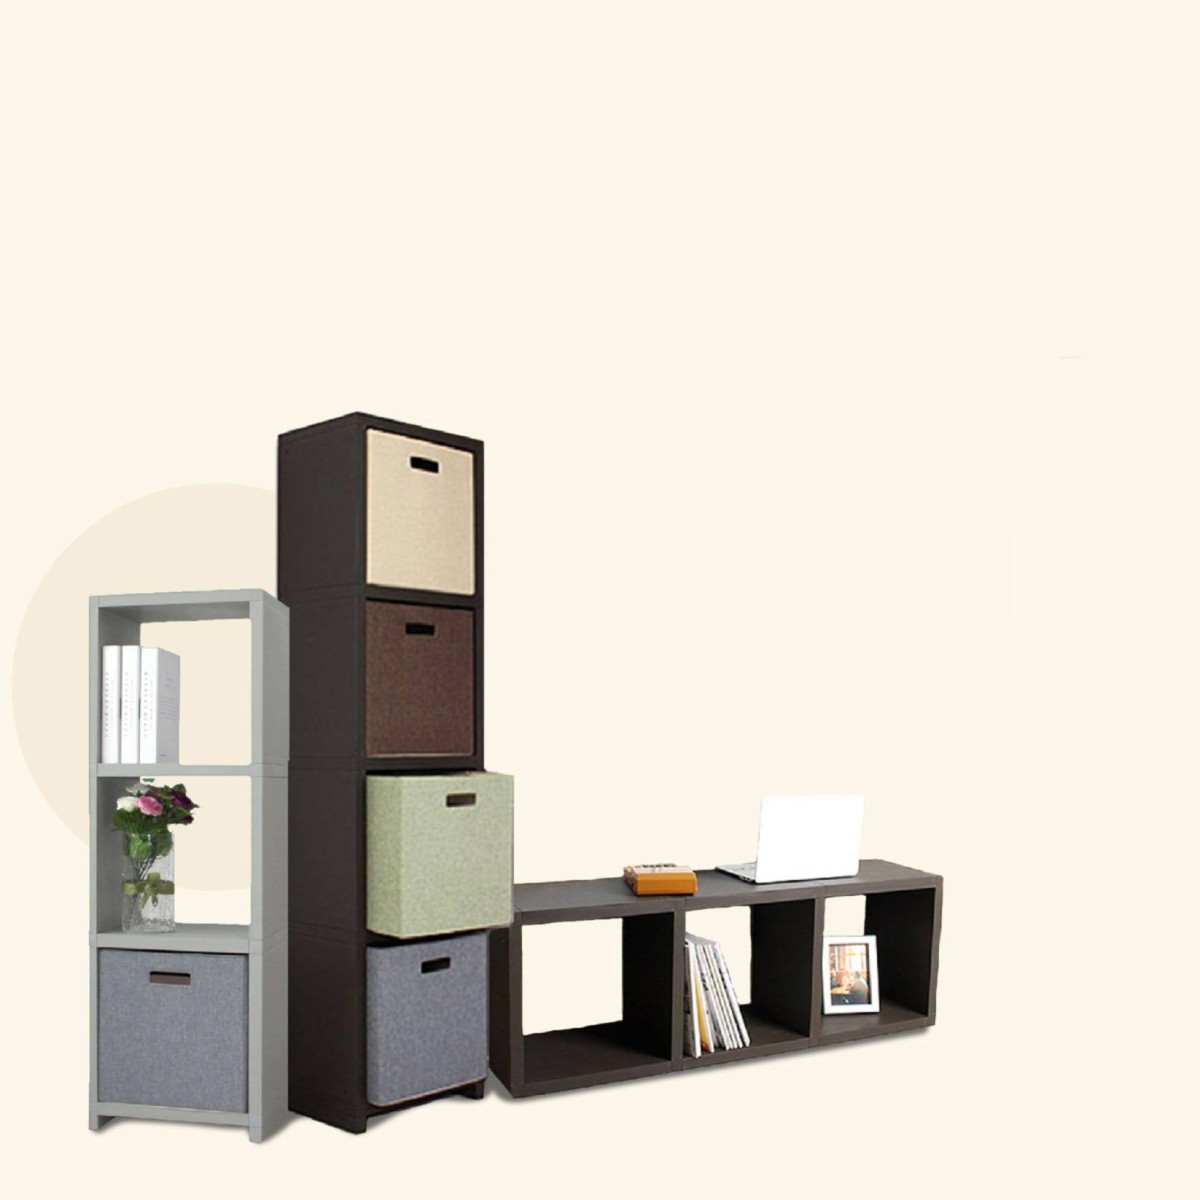 Deko Cube Basic Shelves / Interior shelving / Multipurpose Shelves / Space saving 